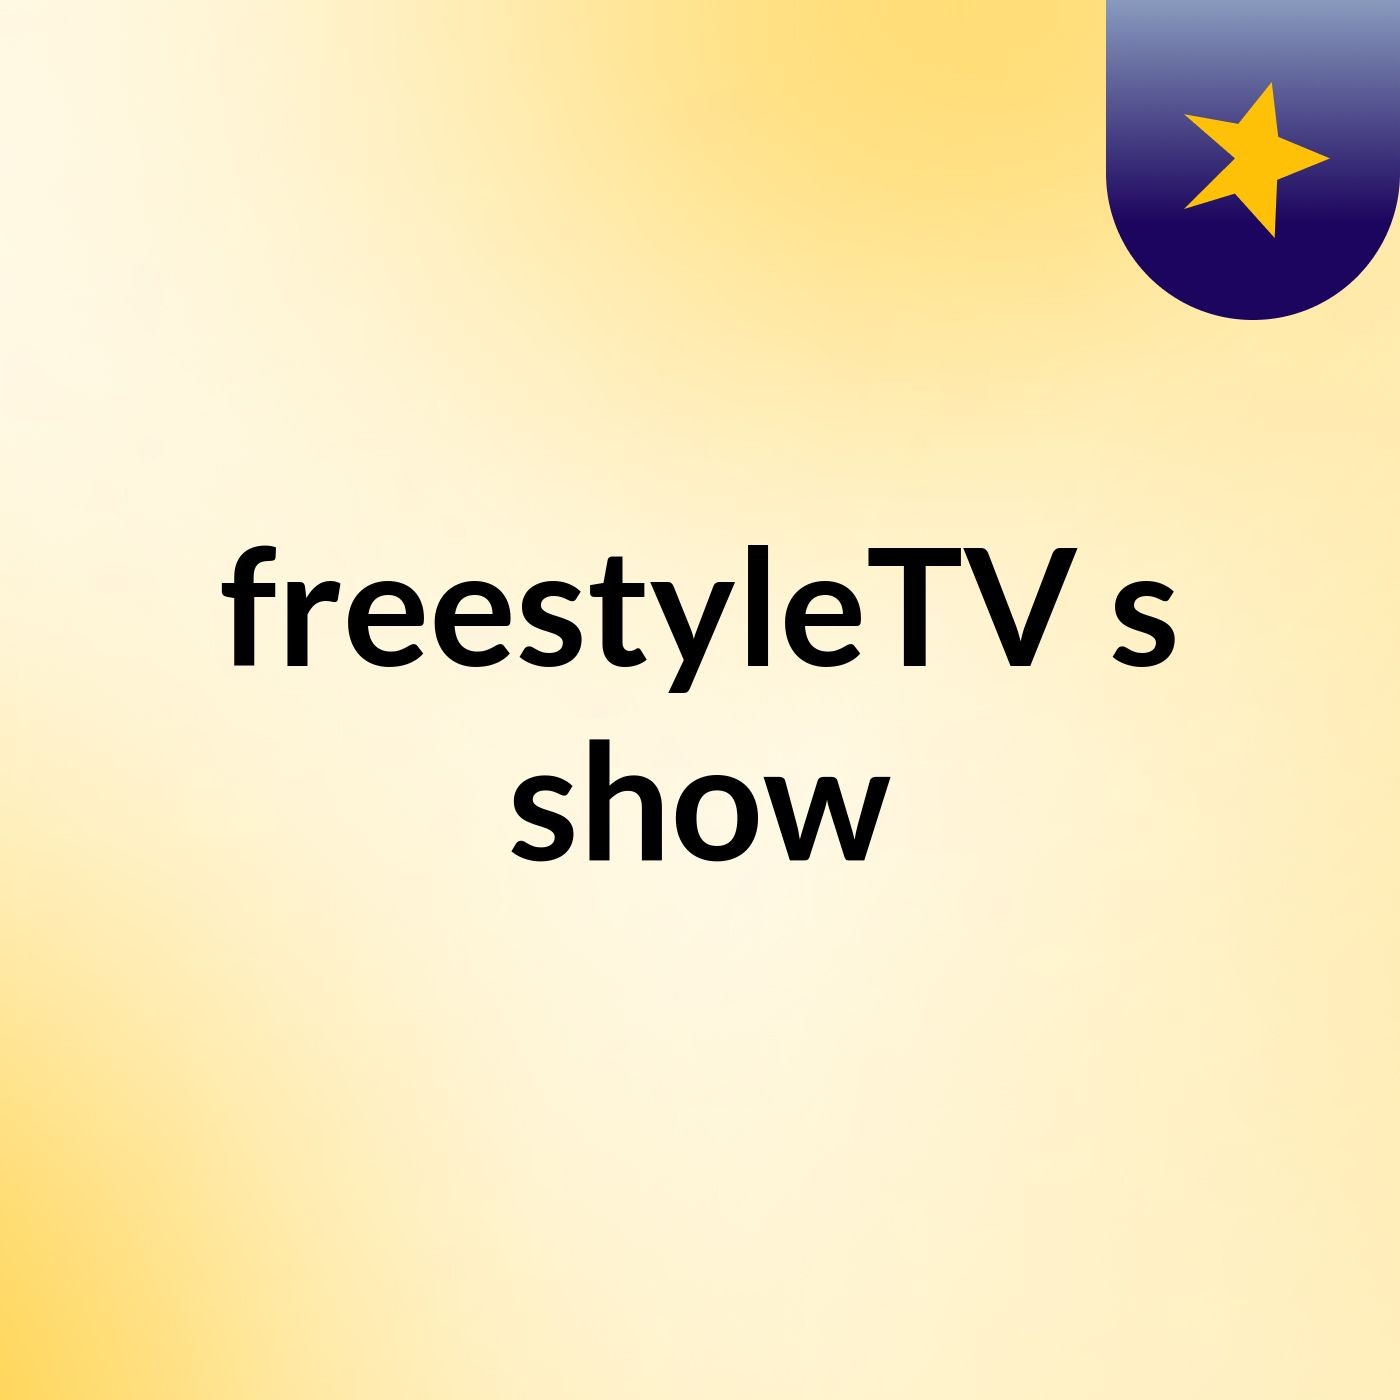 freestyleTV's show